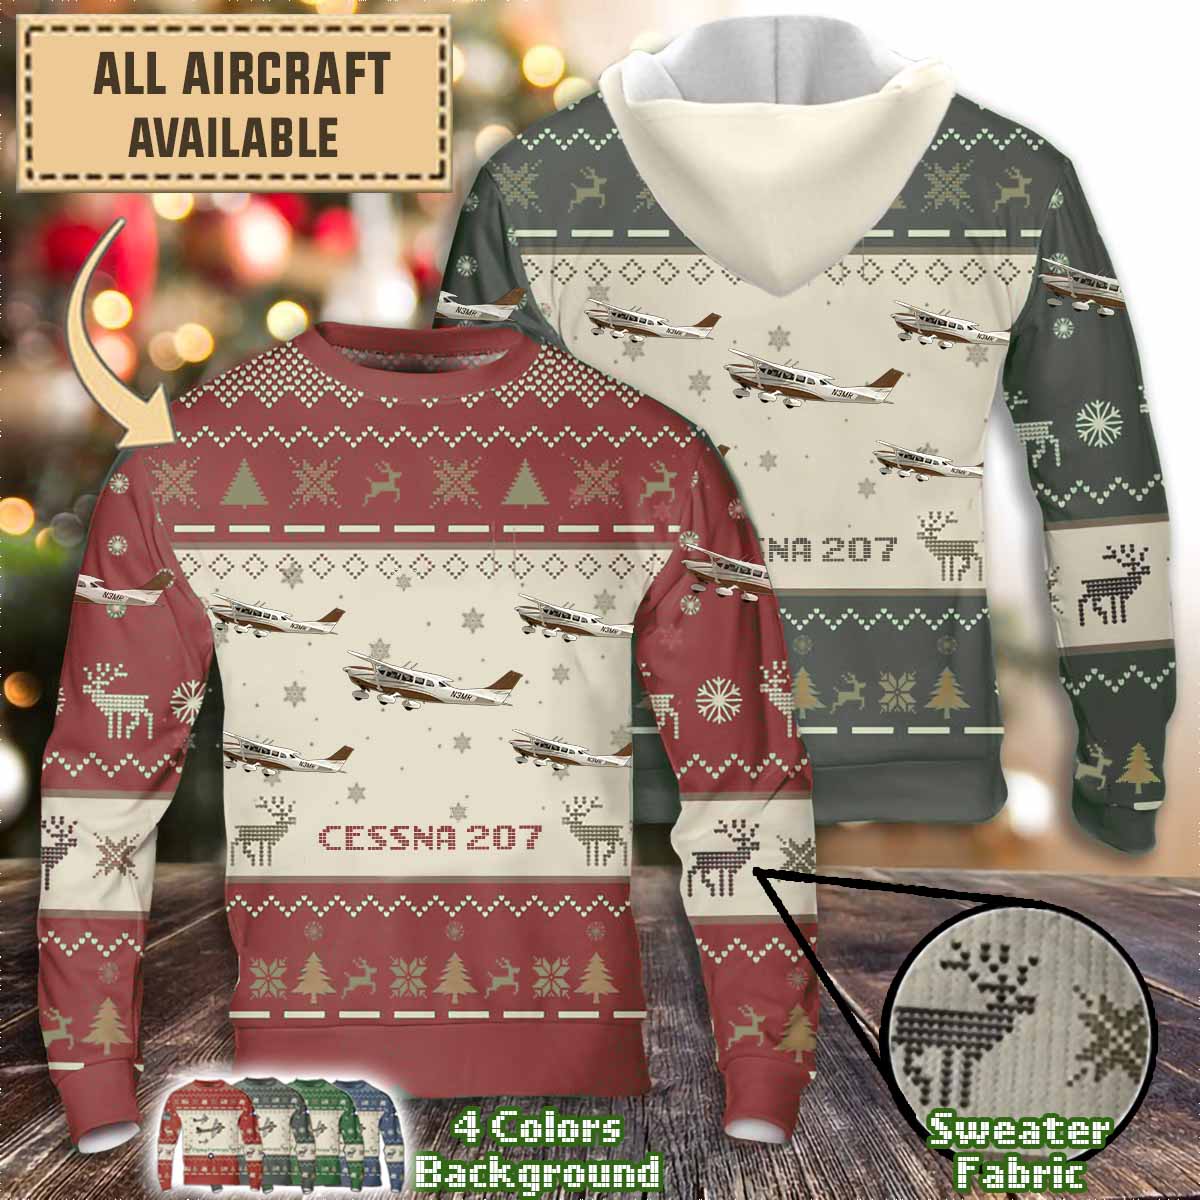 cessna 207aircraft sweater lrar4